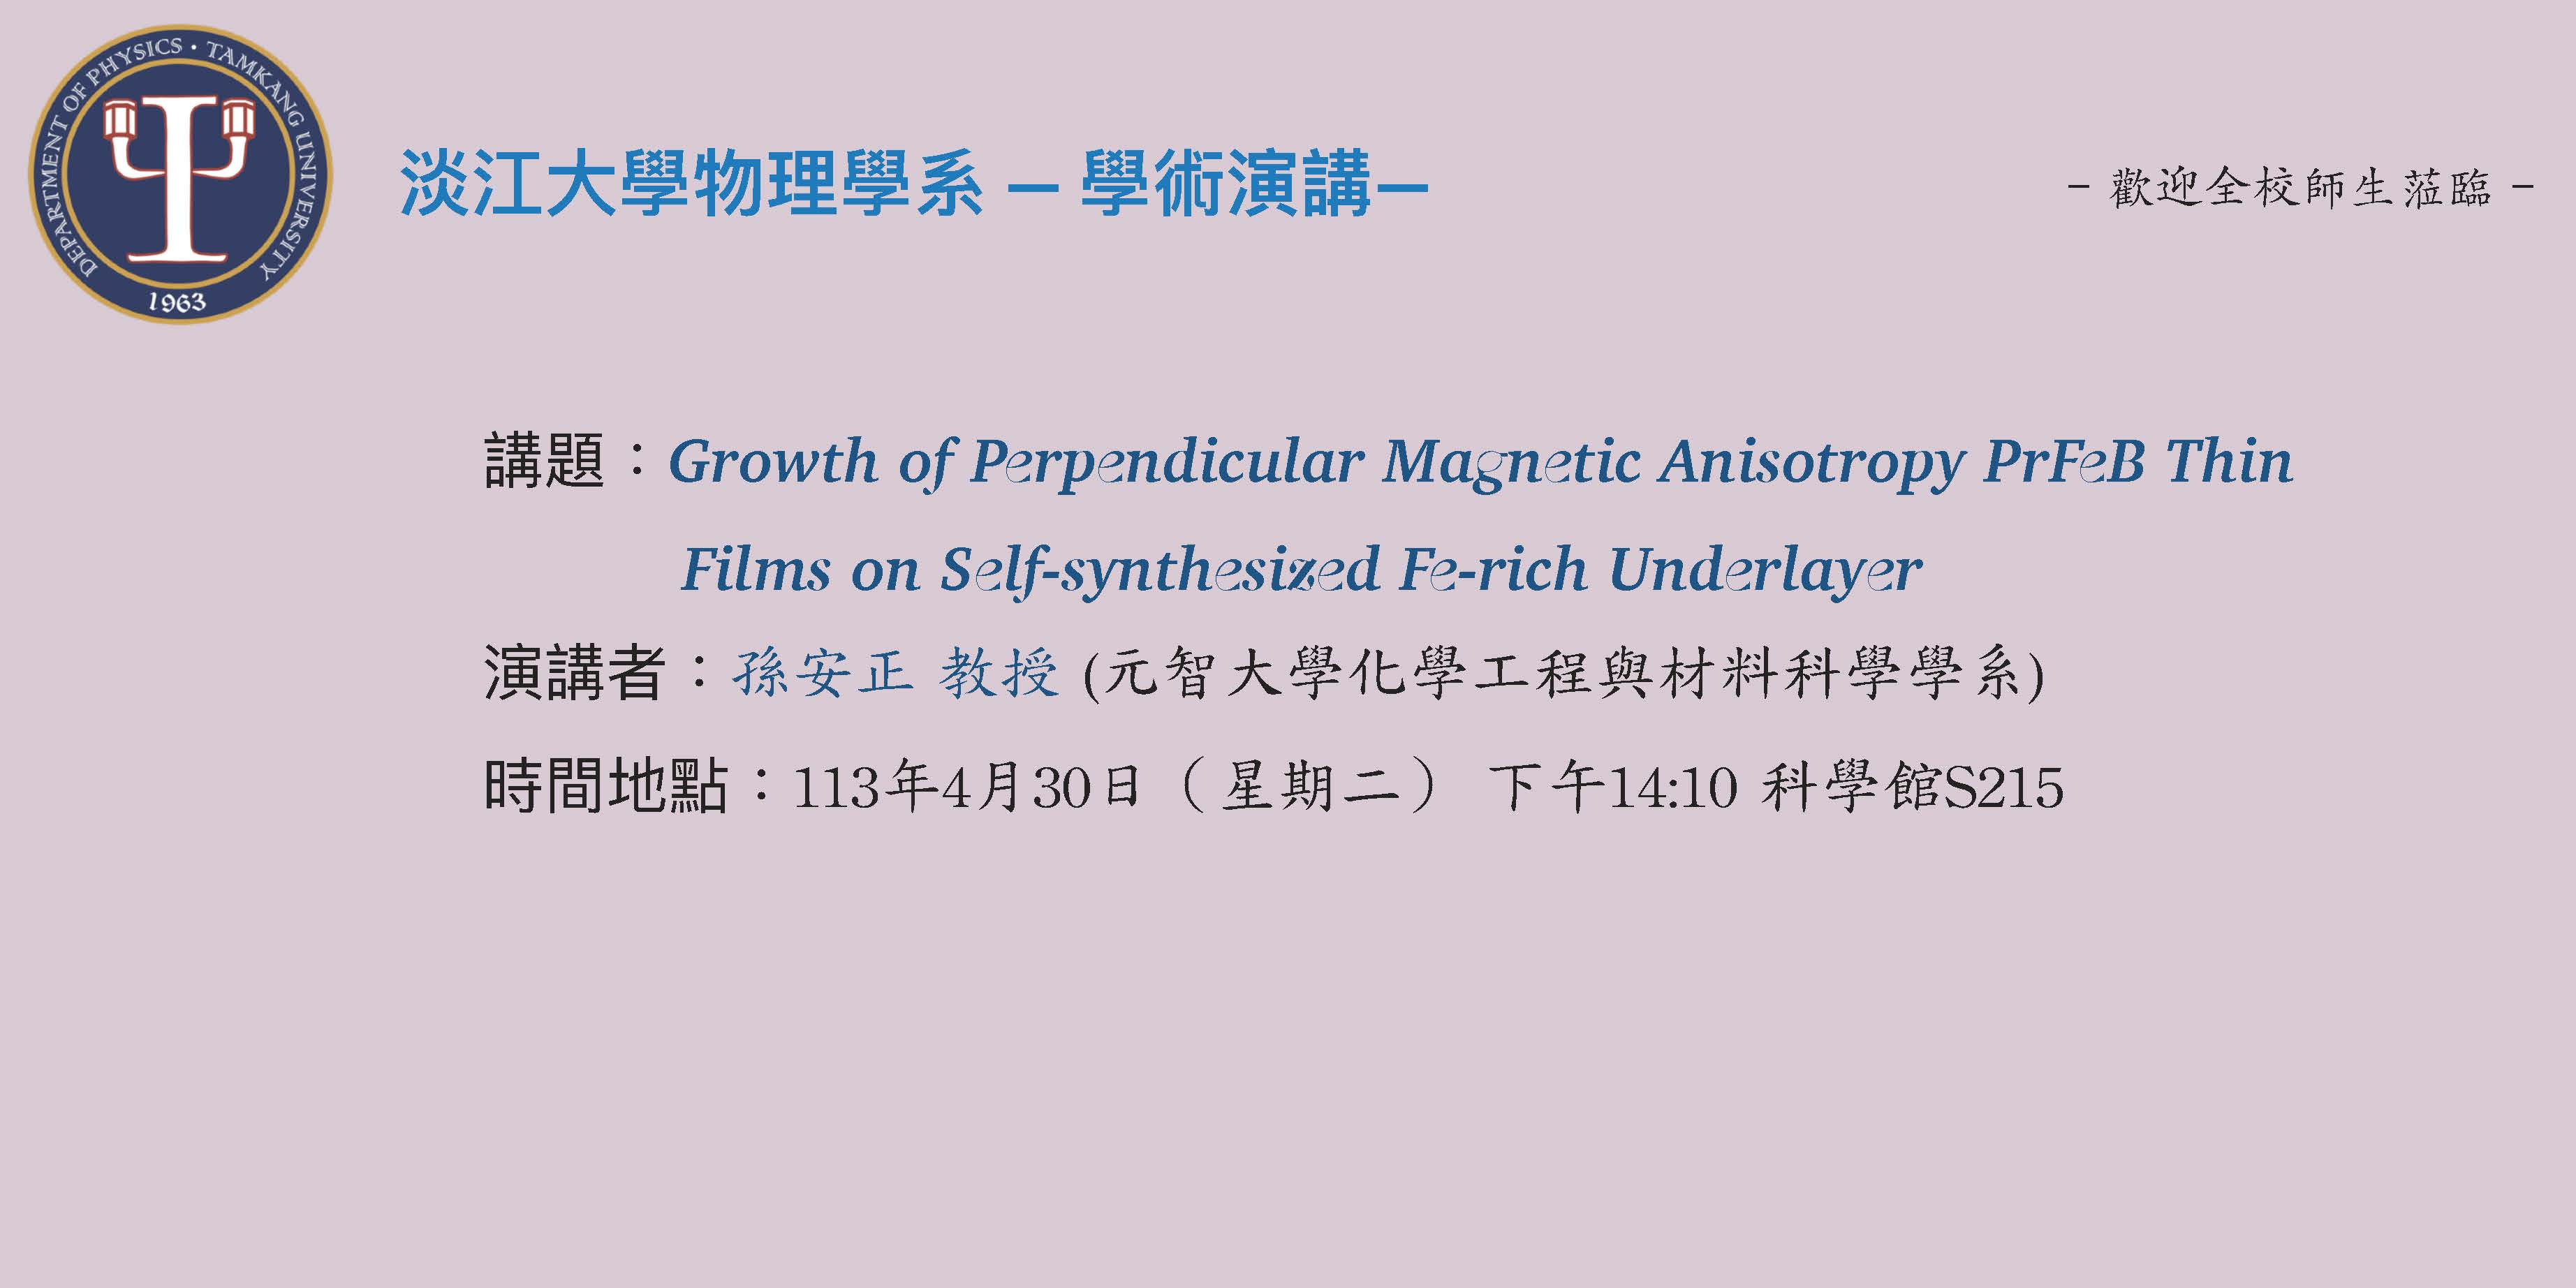 【演講】113.4.30 講題：Growth of Perpendicular Magnetic Anisotropy PrFeB Thin Films on Self-synthesized Fe-rich Underlayer